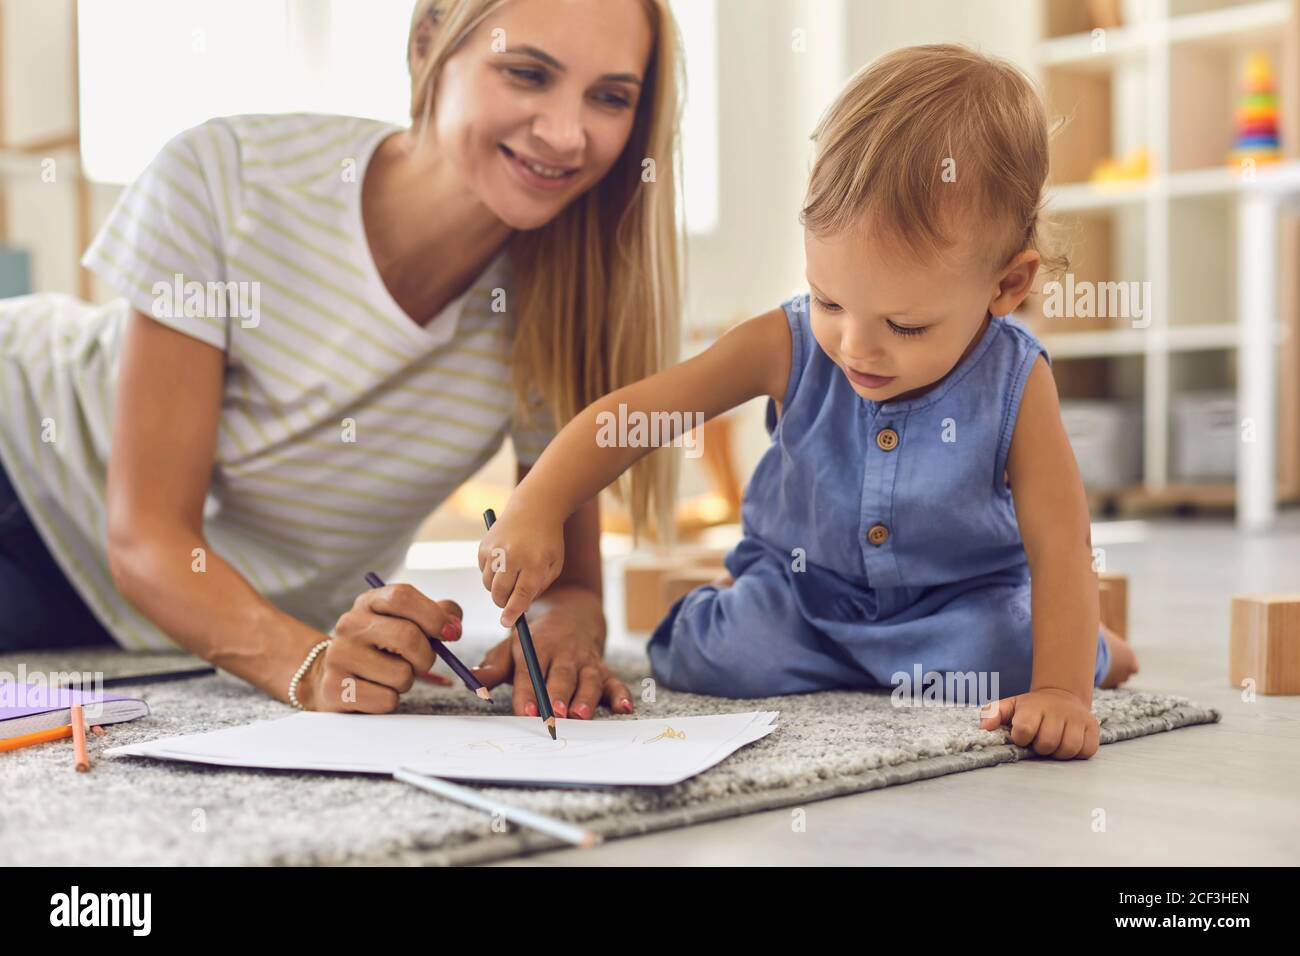 Liebenswert Kleinkind Kritzelei auf Papier mit Bleistift, während sitzend auf Boden mit seinem jungen Kindermädchen Stockfoto